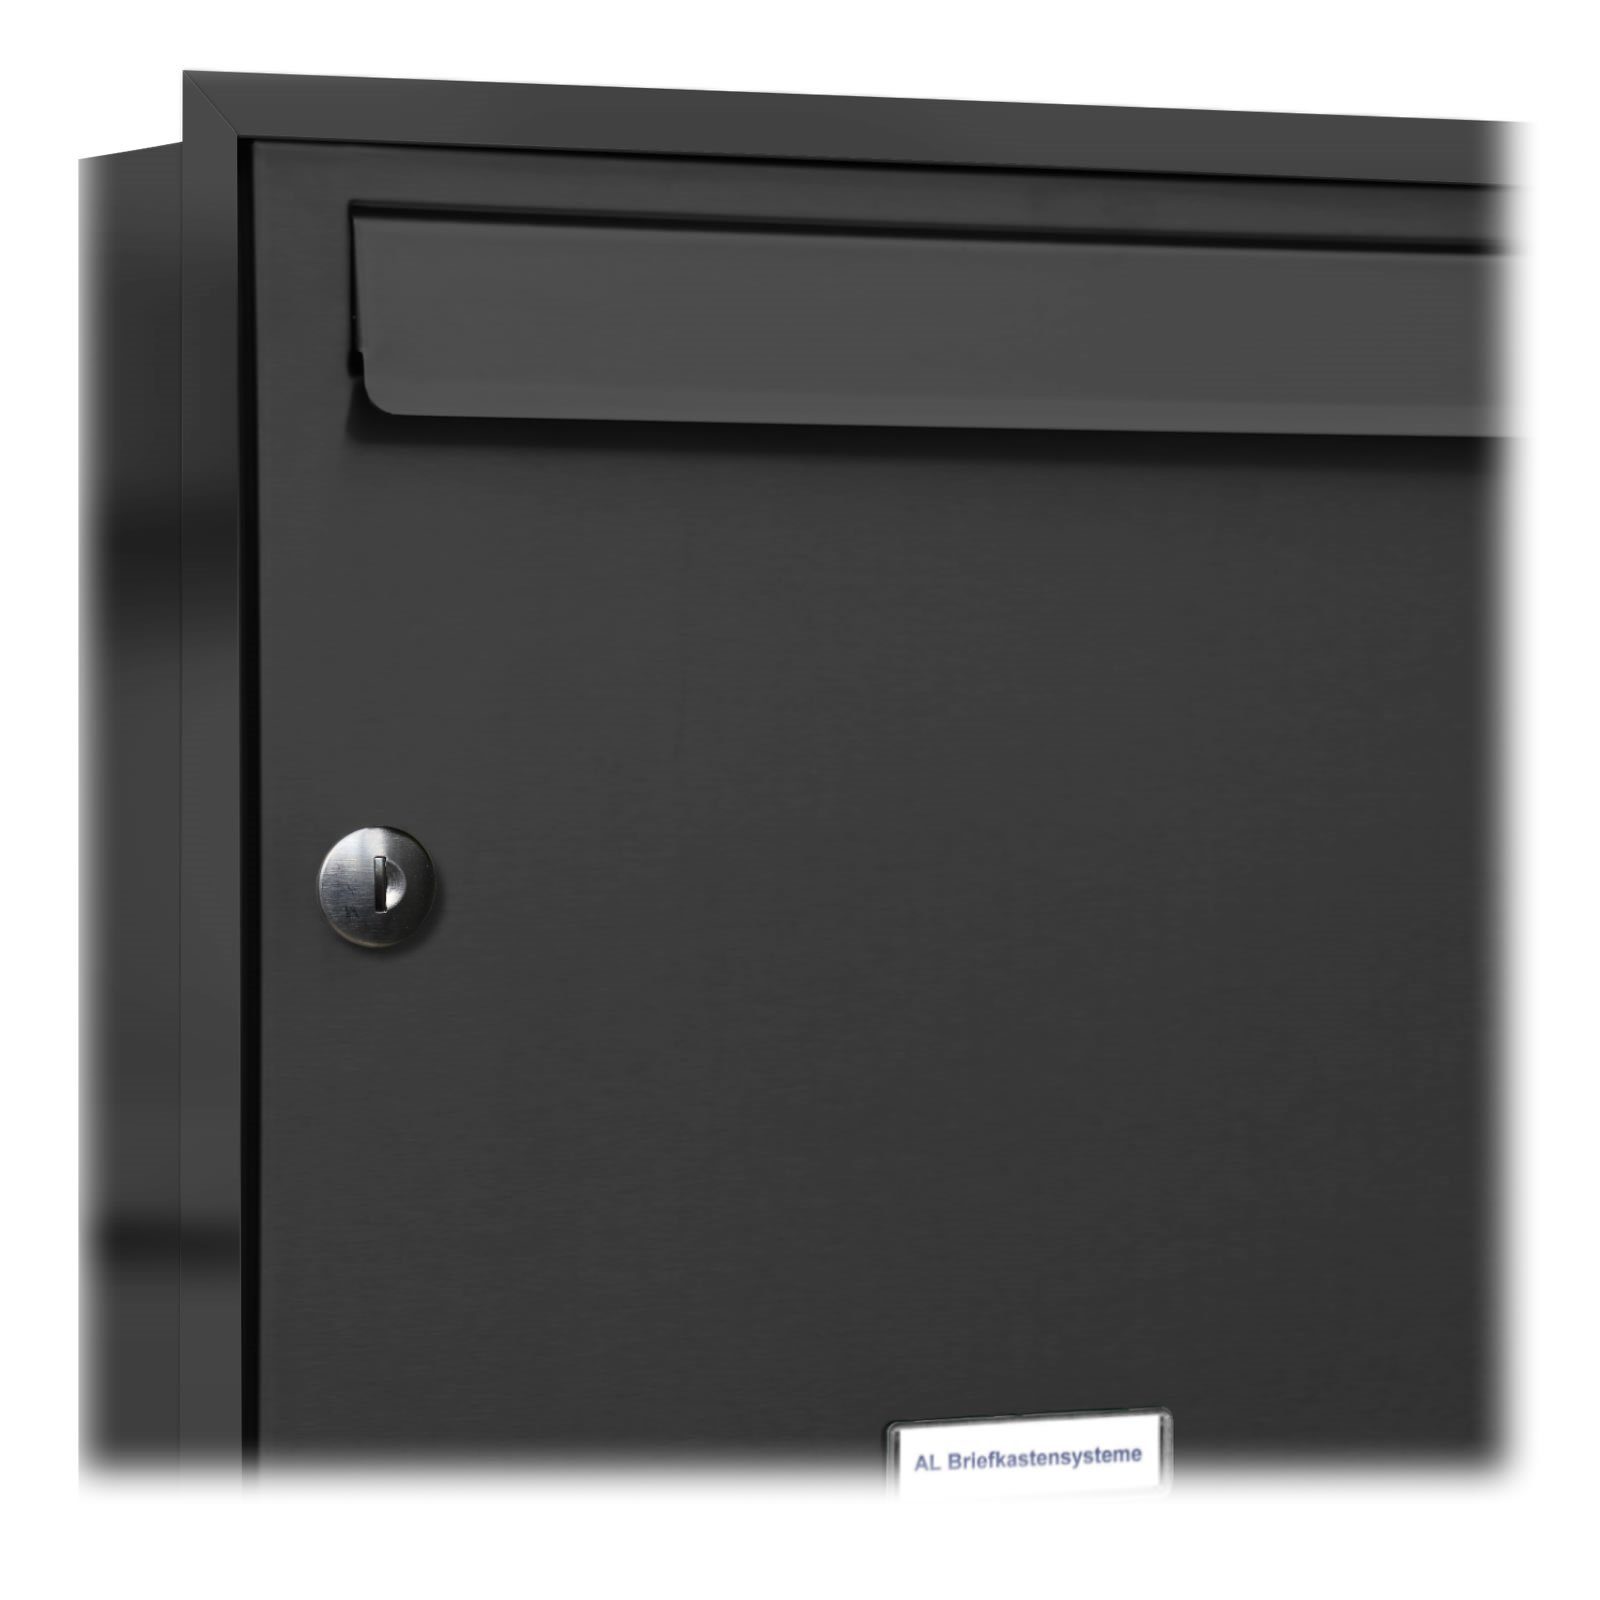 Anthrazit Wandbriefkasten 3x2 Briefkastensysteme Unterputz Klingel mit AL Briefkasten Fach Premium 5 5er